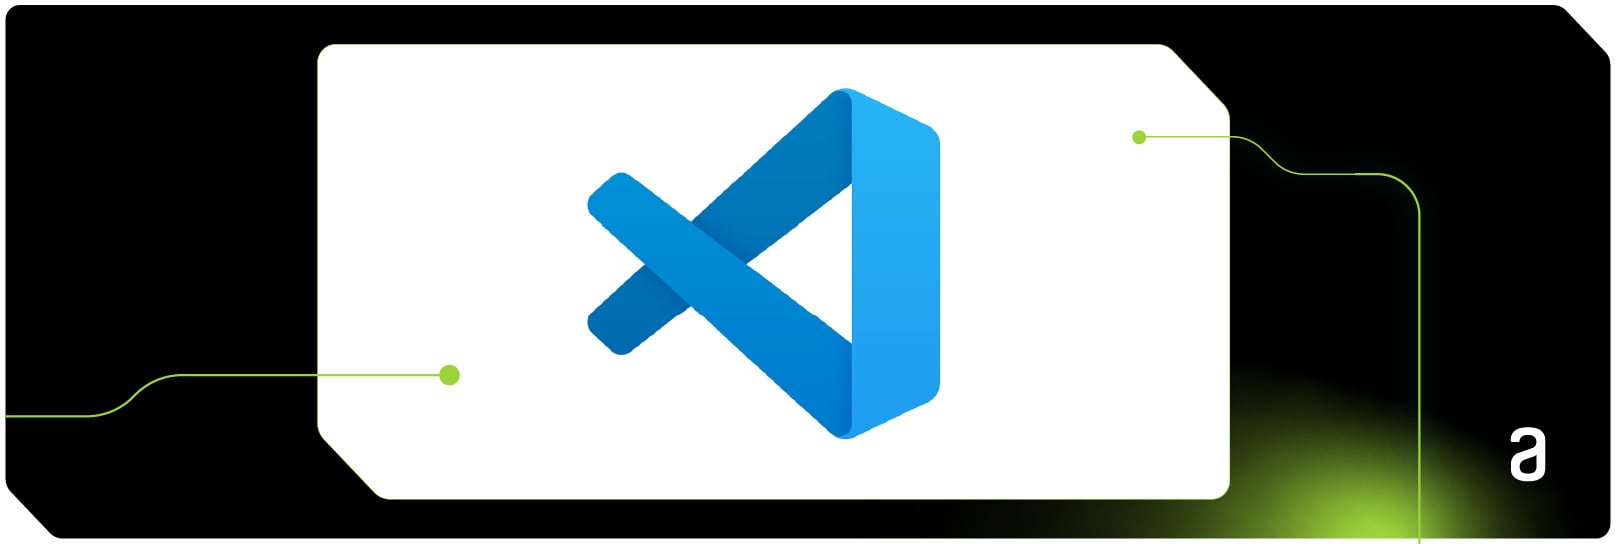 Logo do Visual Studio Code.